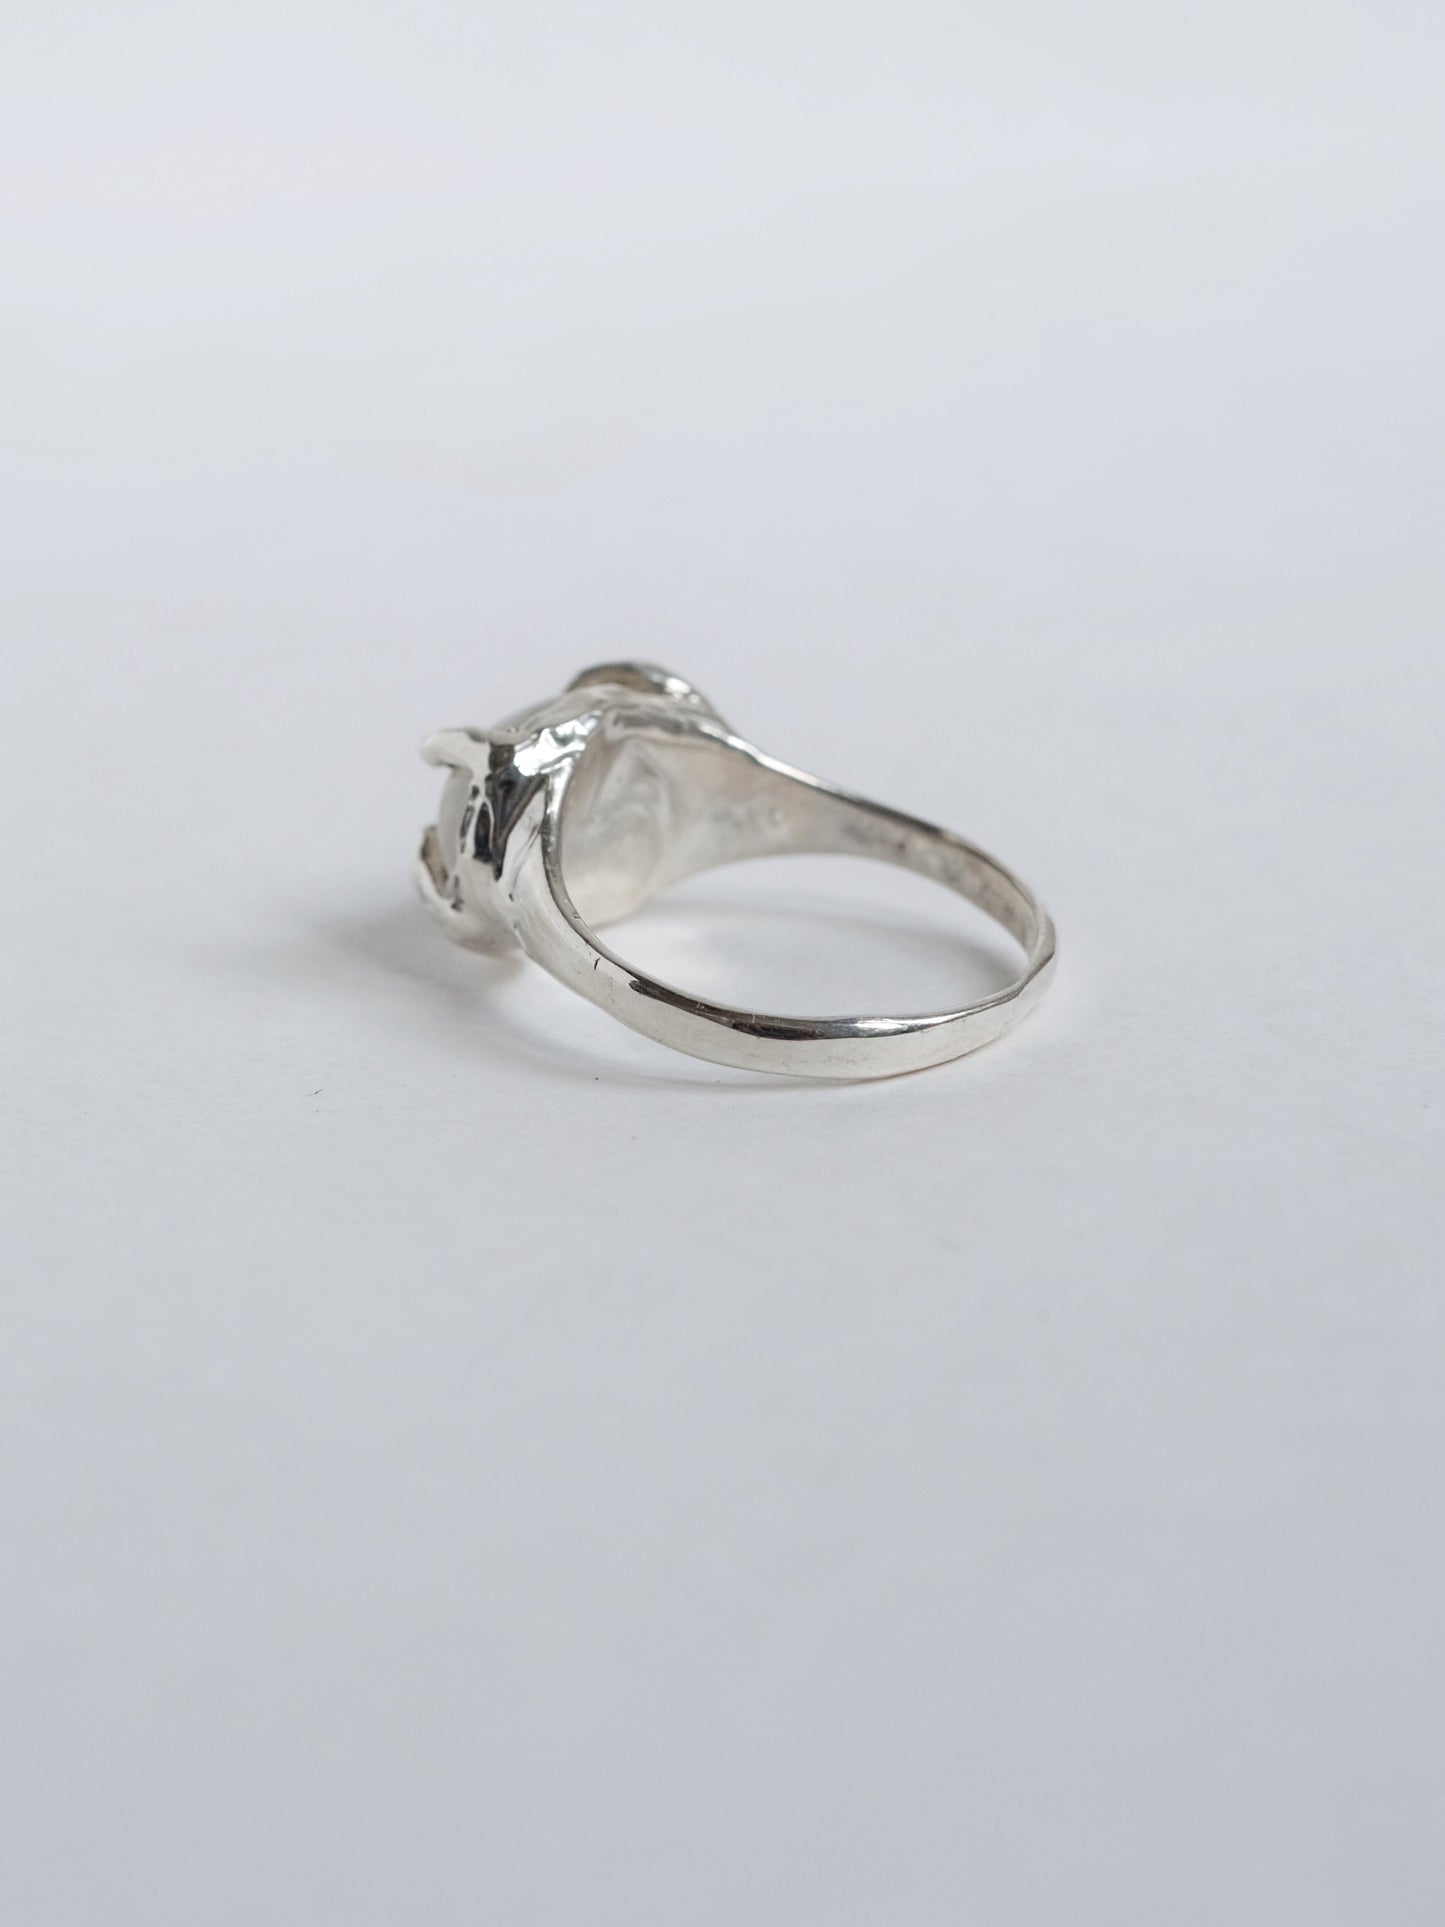 Ring with "Rutile quartz"